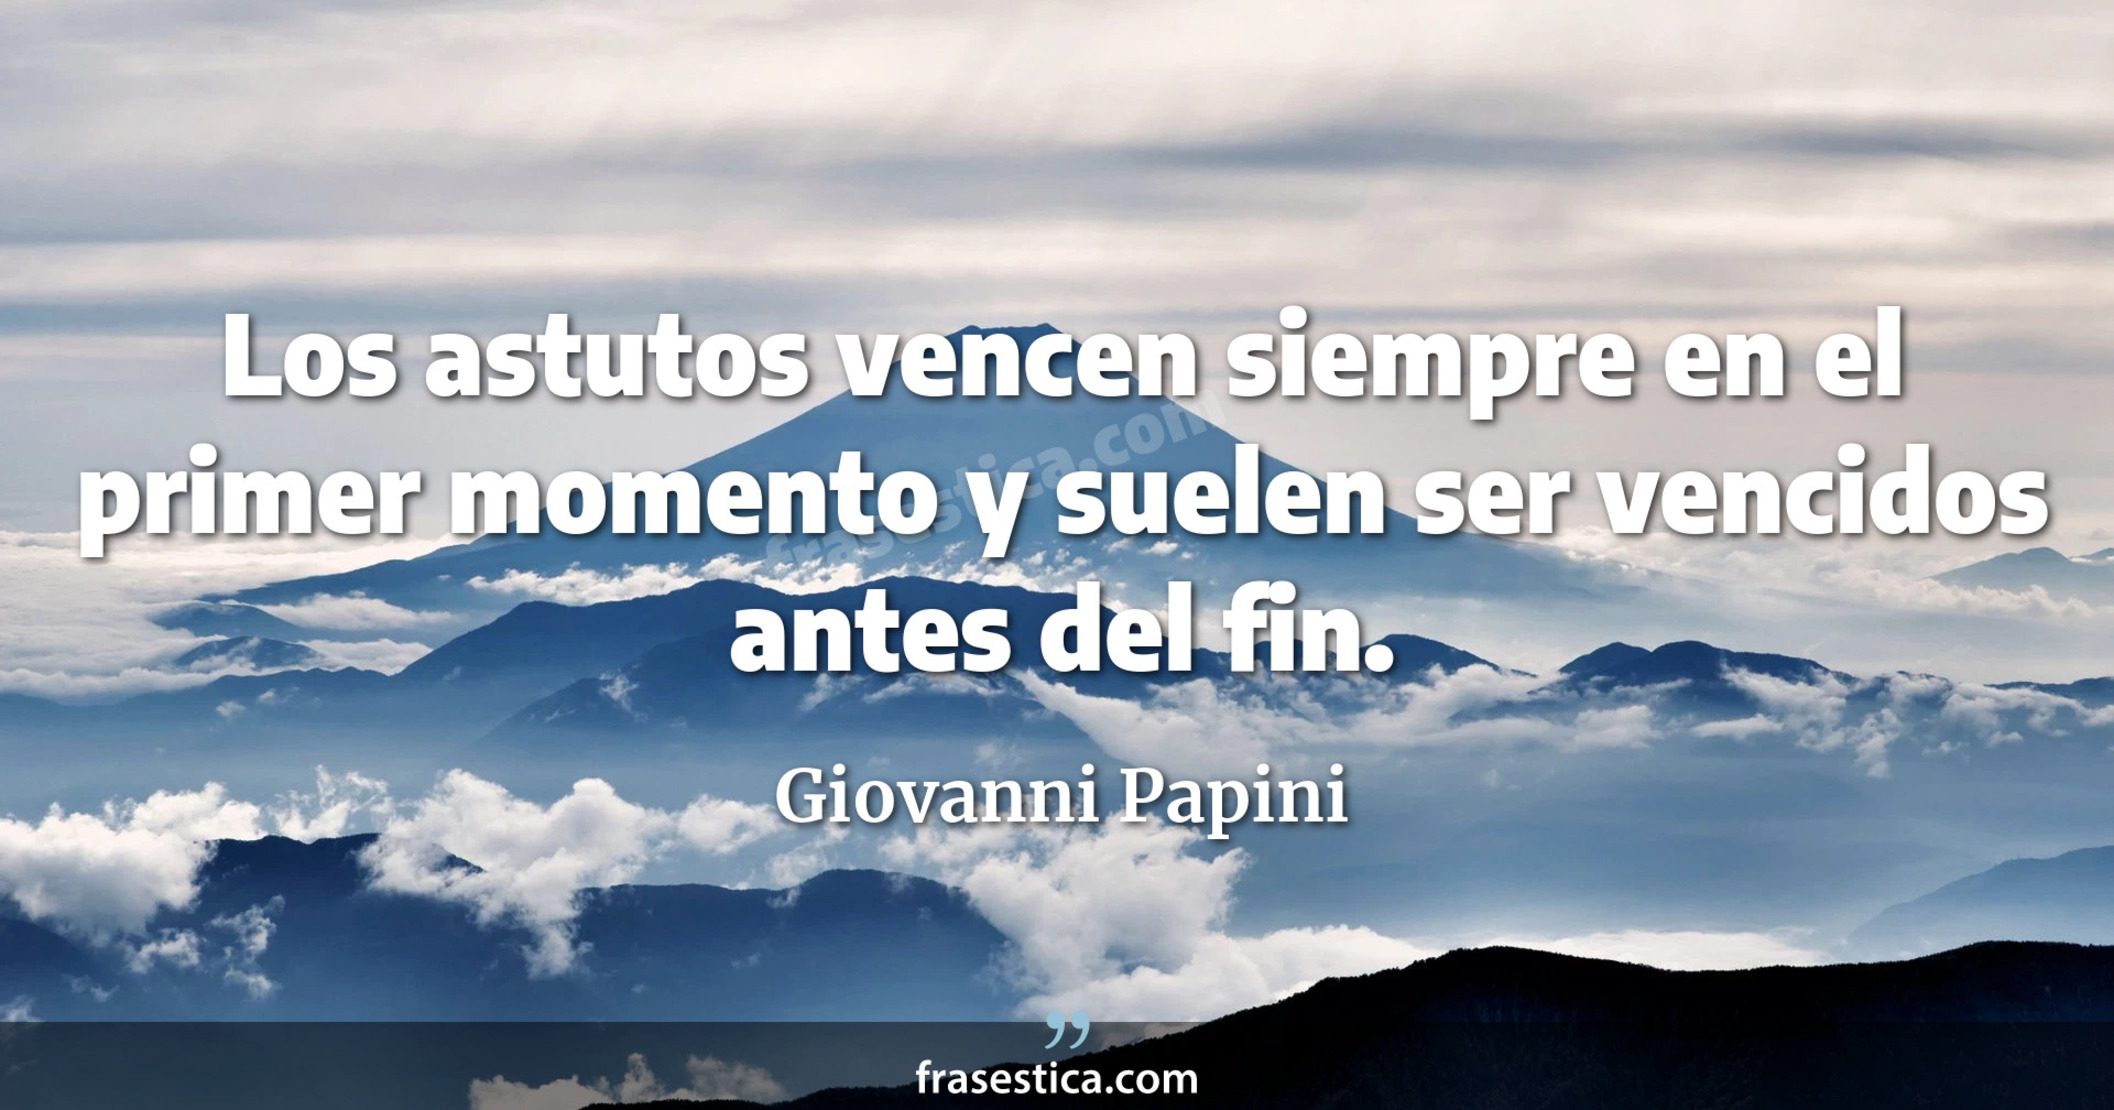 Los astutos vencen siempre en el primer momento y suelen ser vencidos antes del fin. - Giovanni Papini